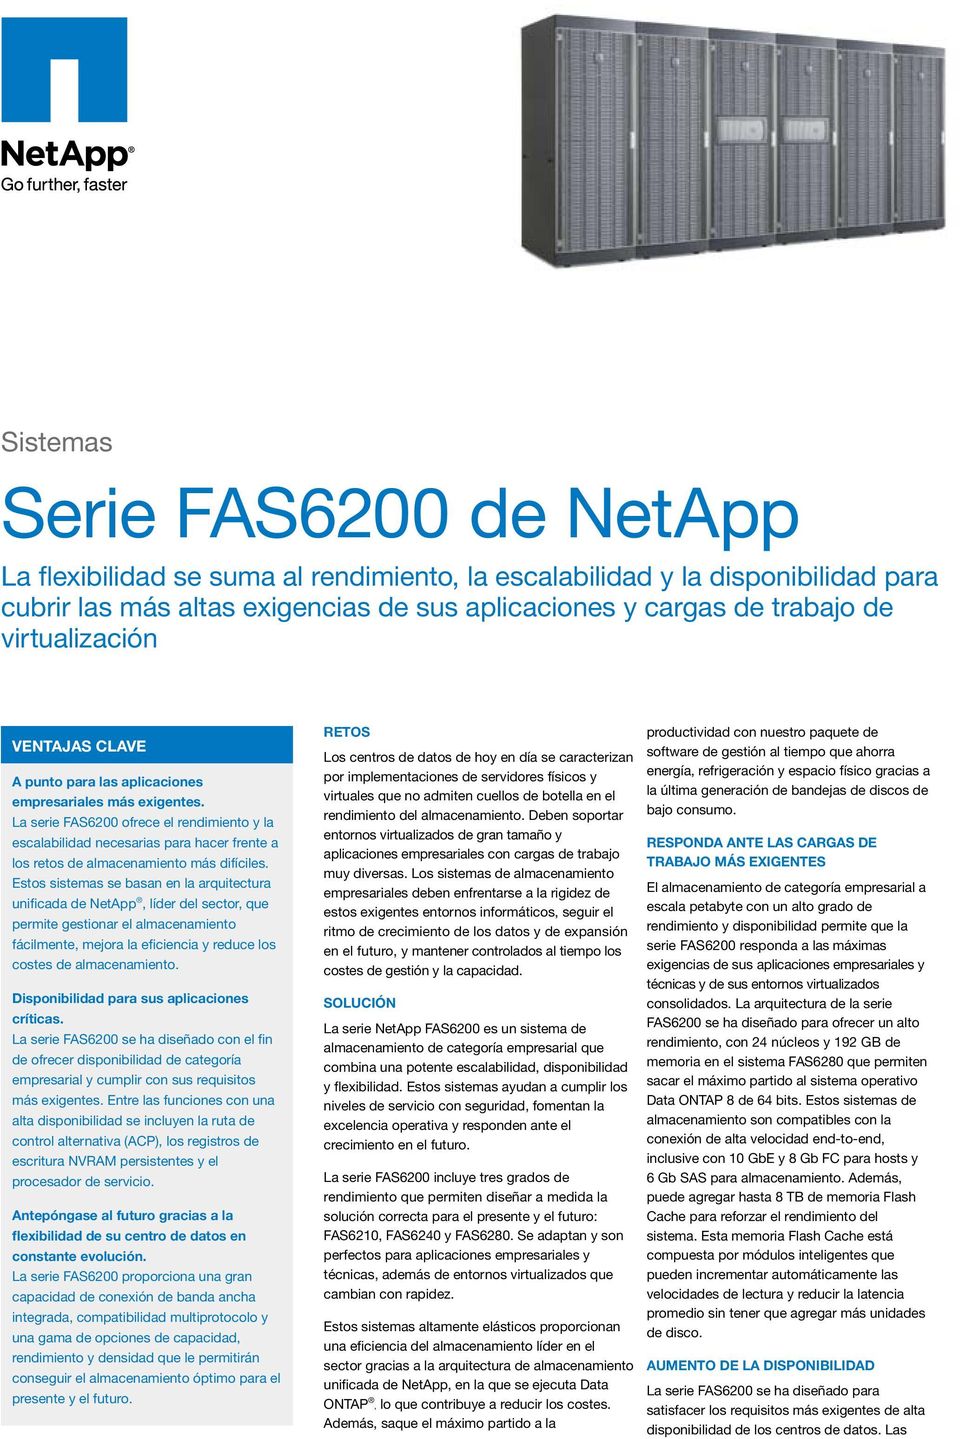 La serie FAS6200 ofrece el rendimiento y la escalabilidad necesarias para hacer frente a los retos de más difíciles.